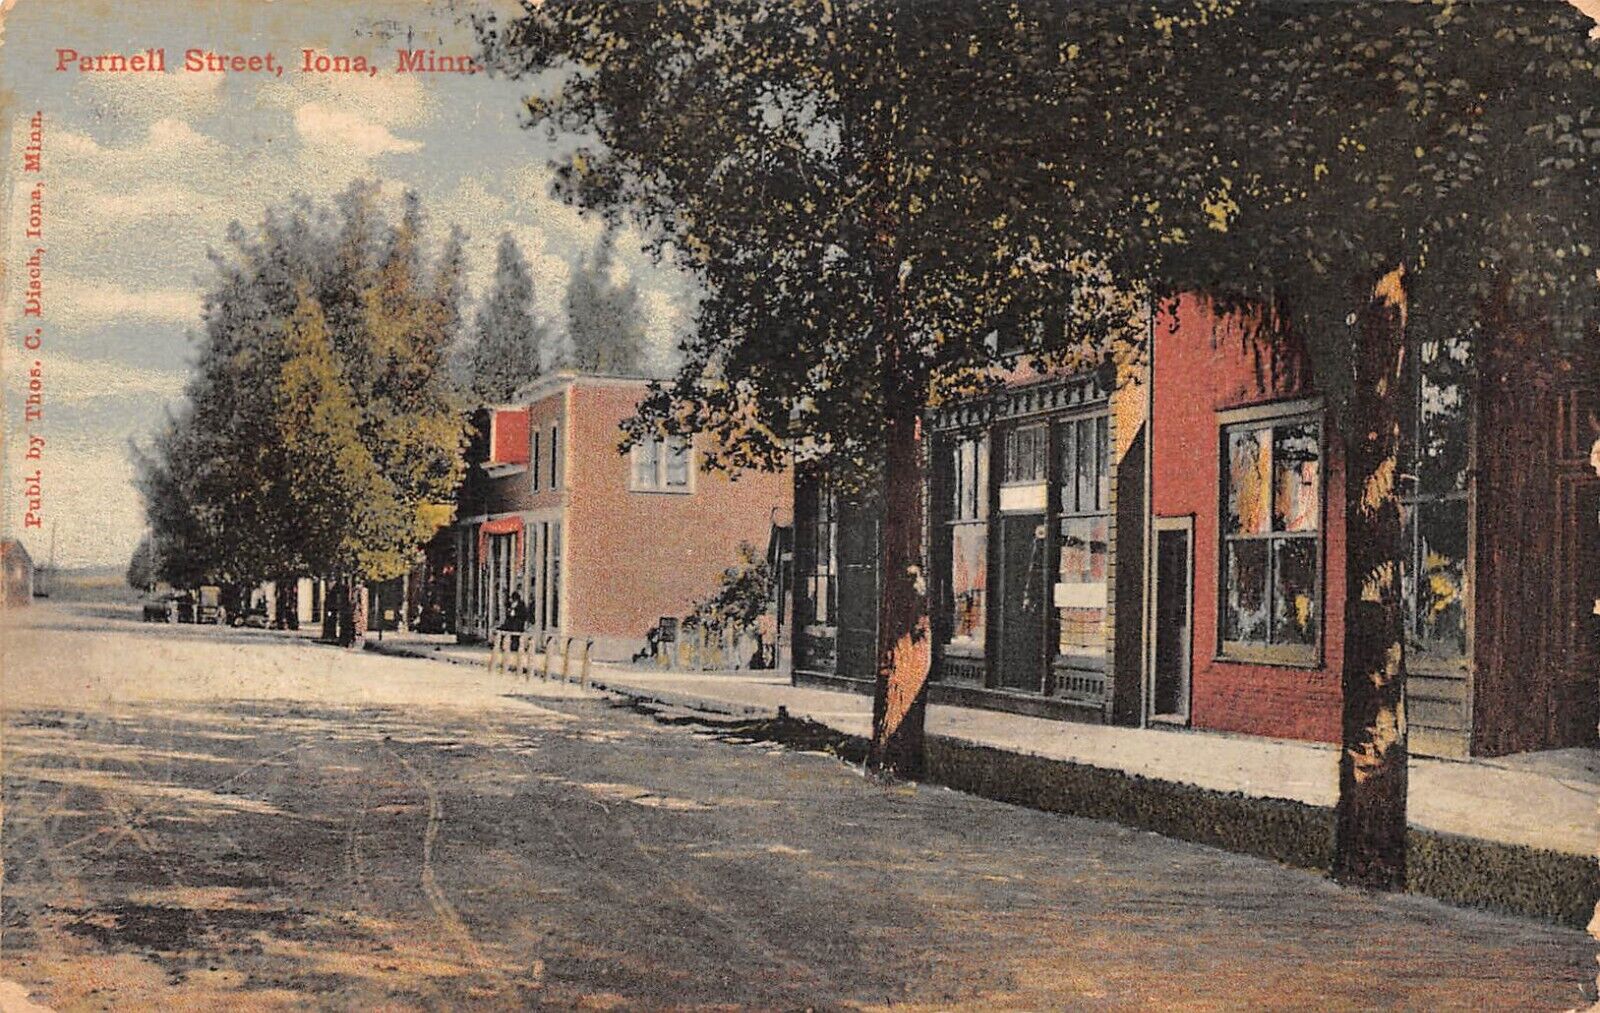 Iona Minnesota PARNELL STREET Dirt Road 1912 Postcard